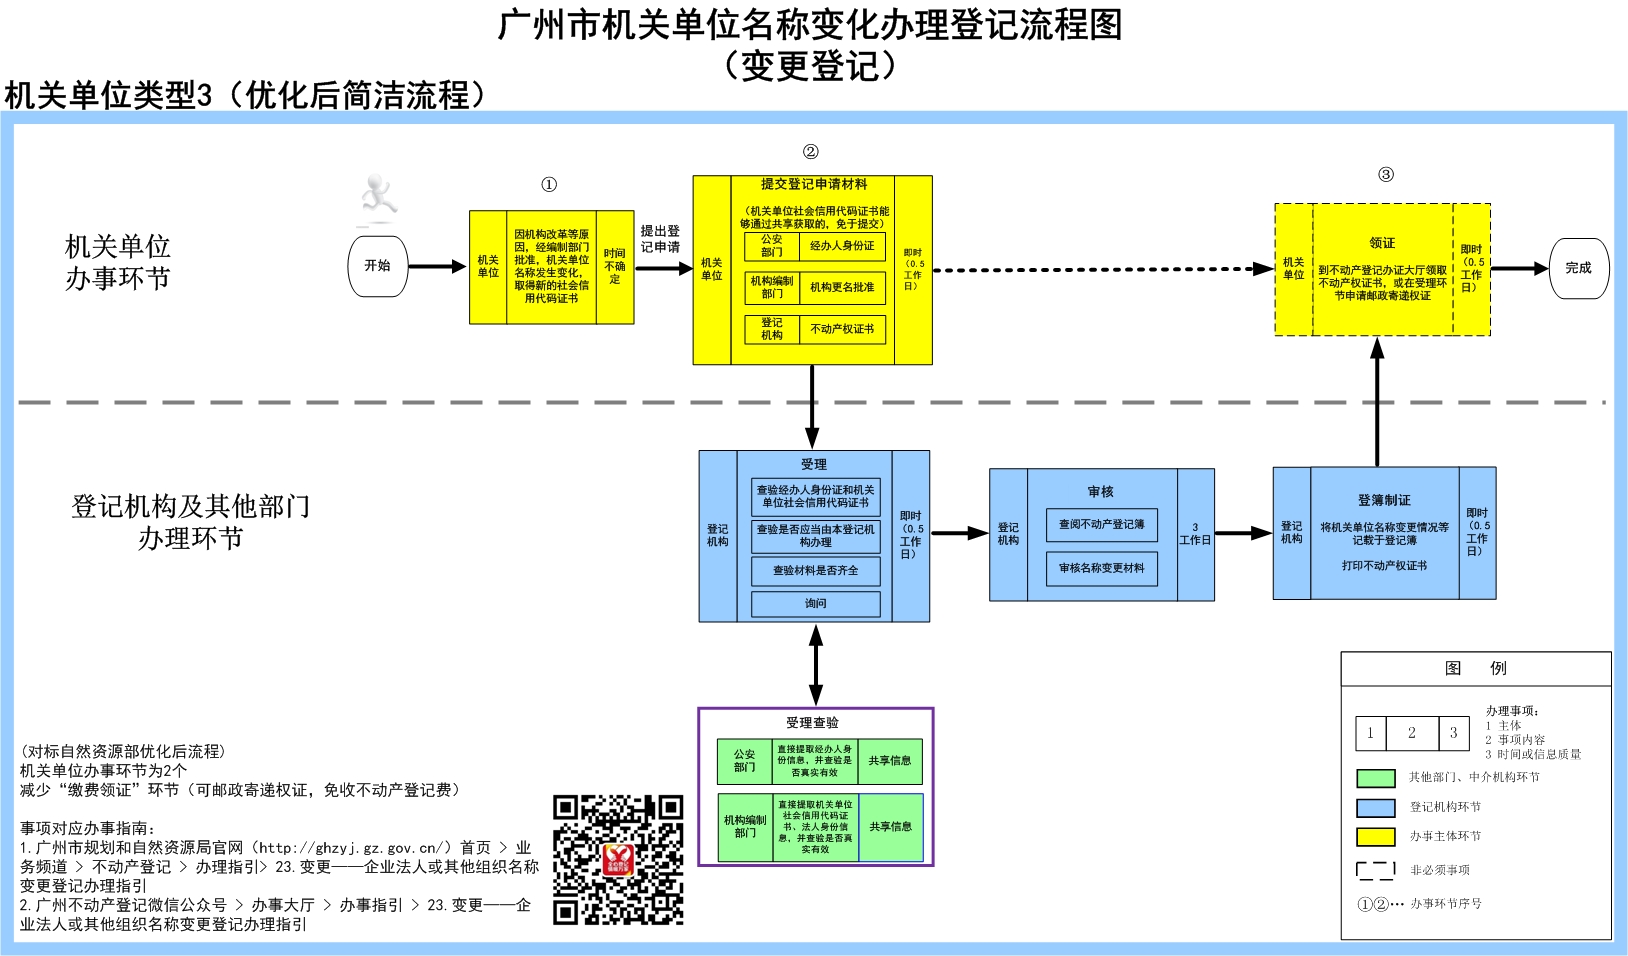 3广州市机关单位名称变化办理登记流程（变更登记）.jpg